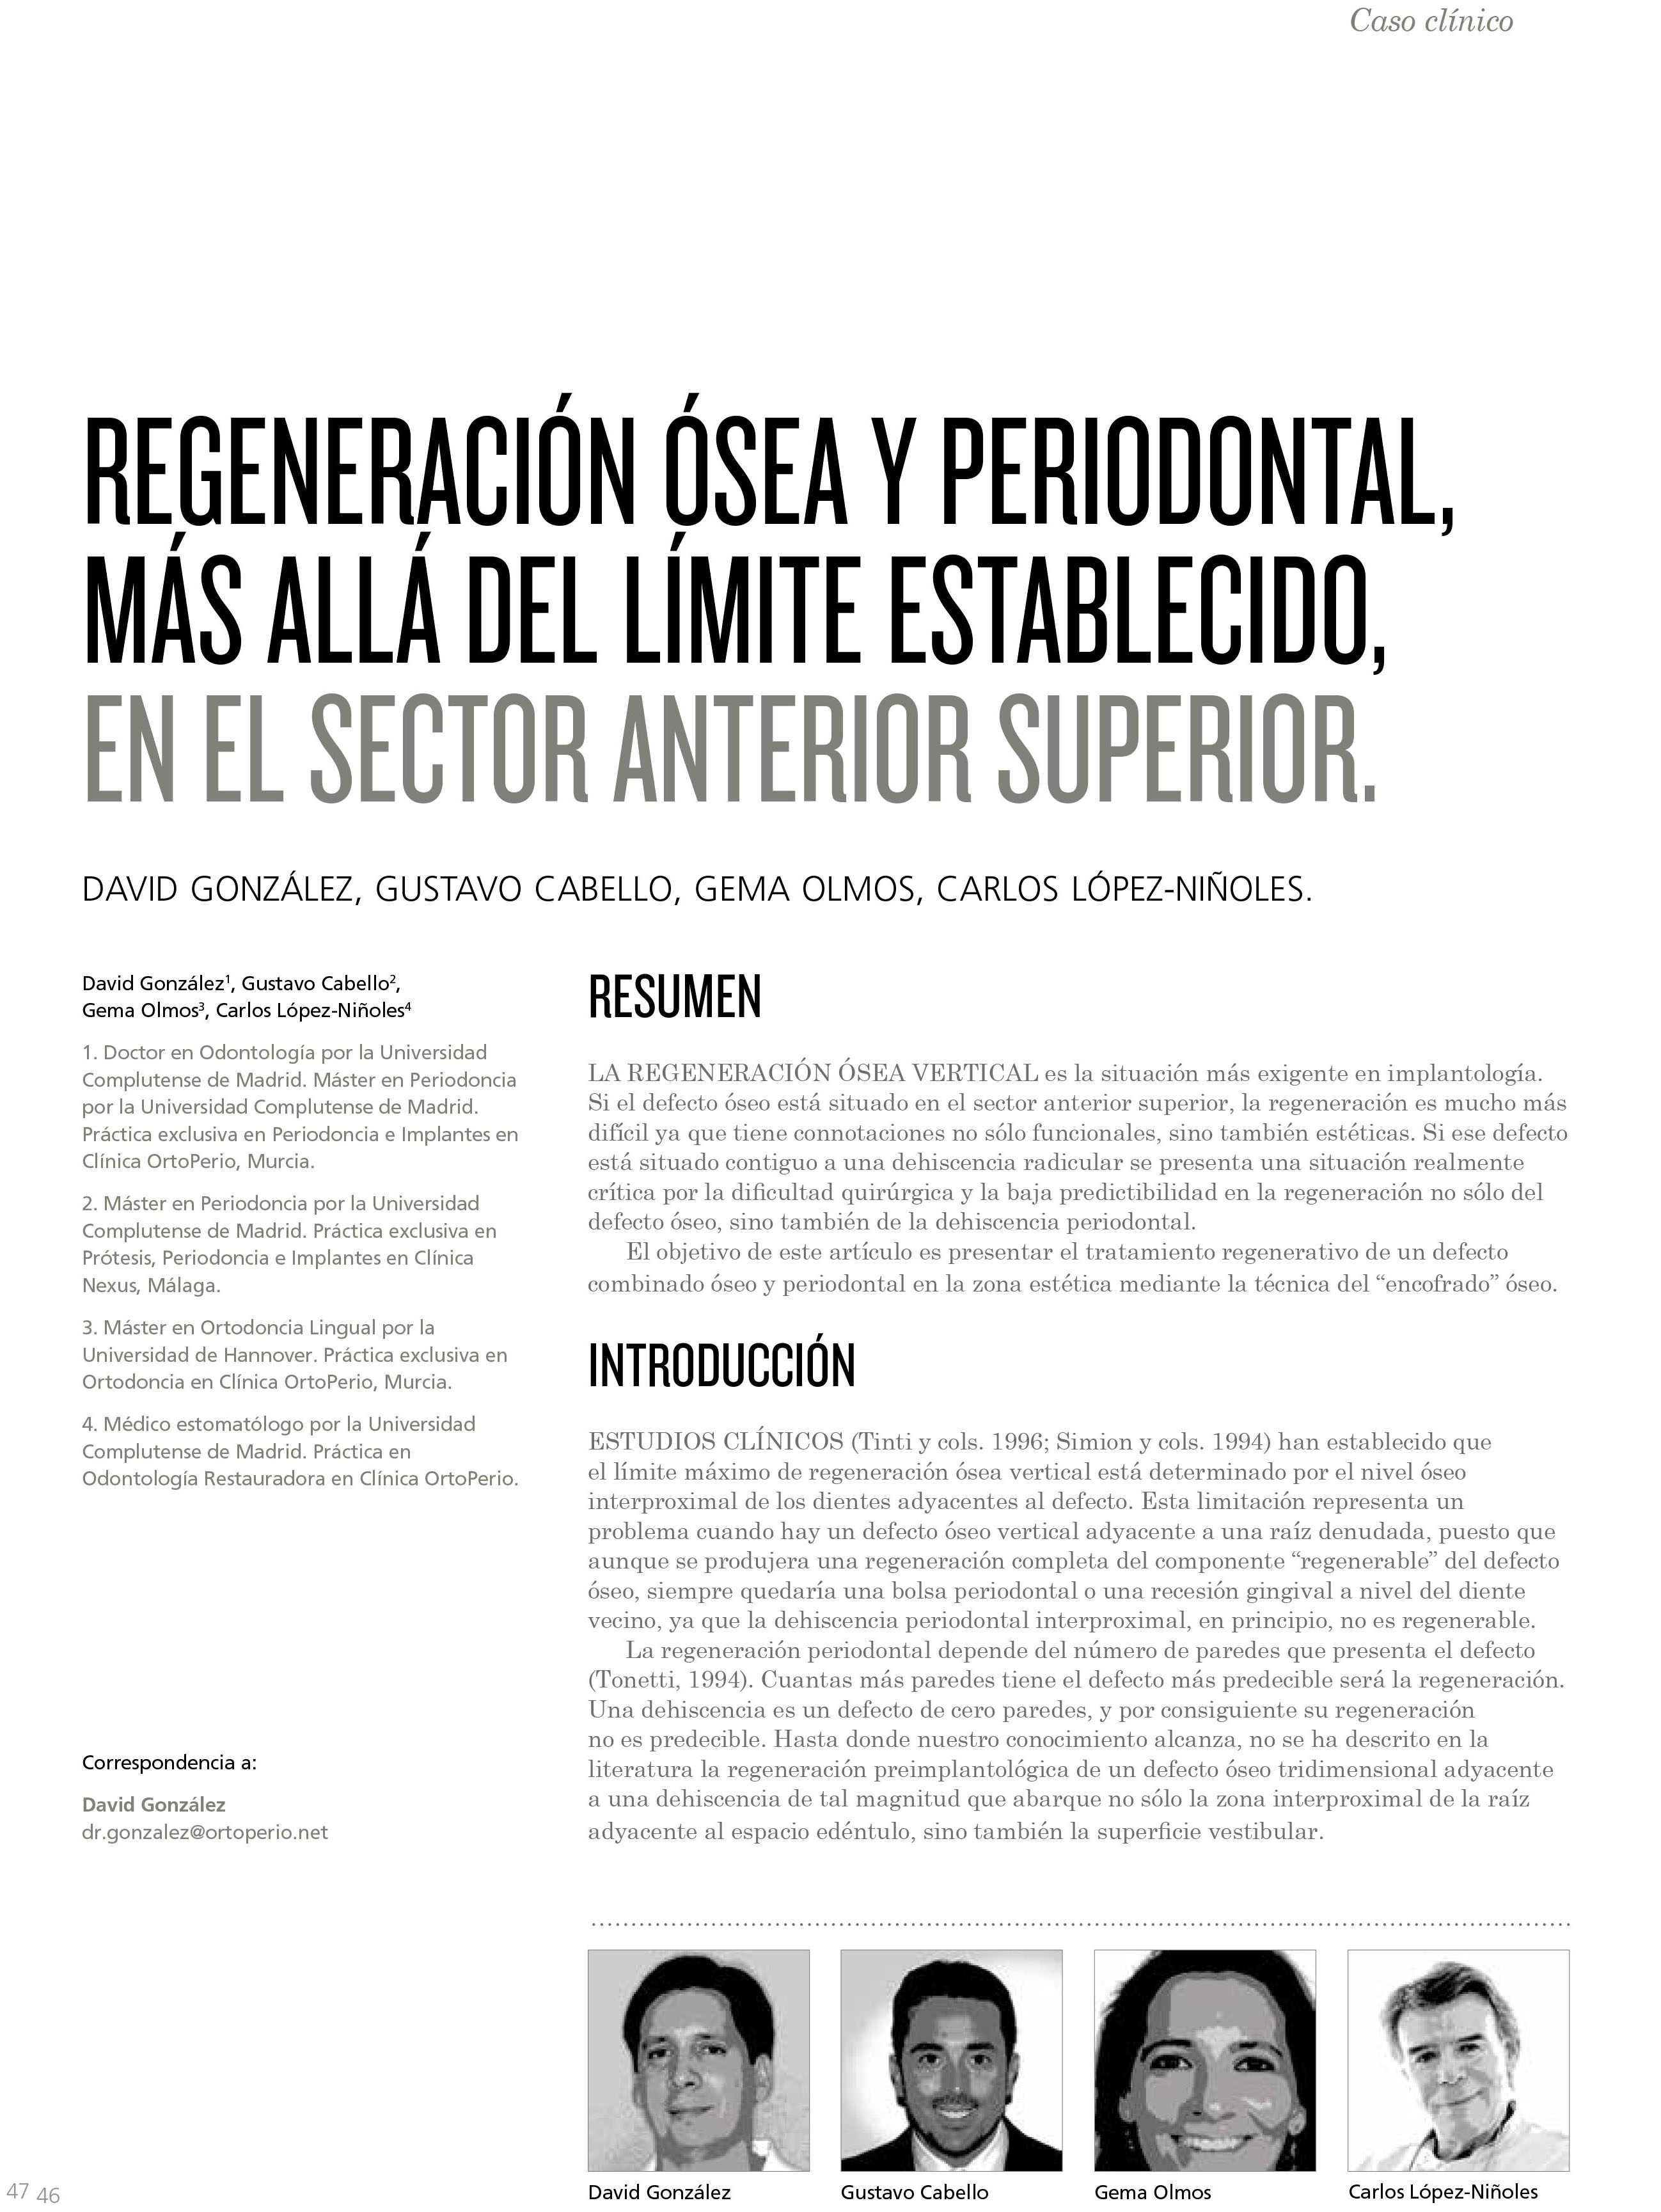 Nueva Publicación del Dr. David González y cols. en la revista de la Sociedad Española de Periodoncia y Osteointegración|Clínica Dental Ortoperio